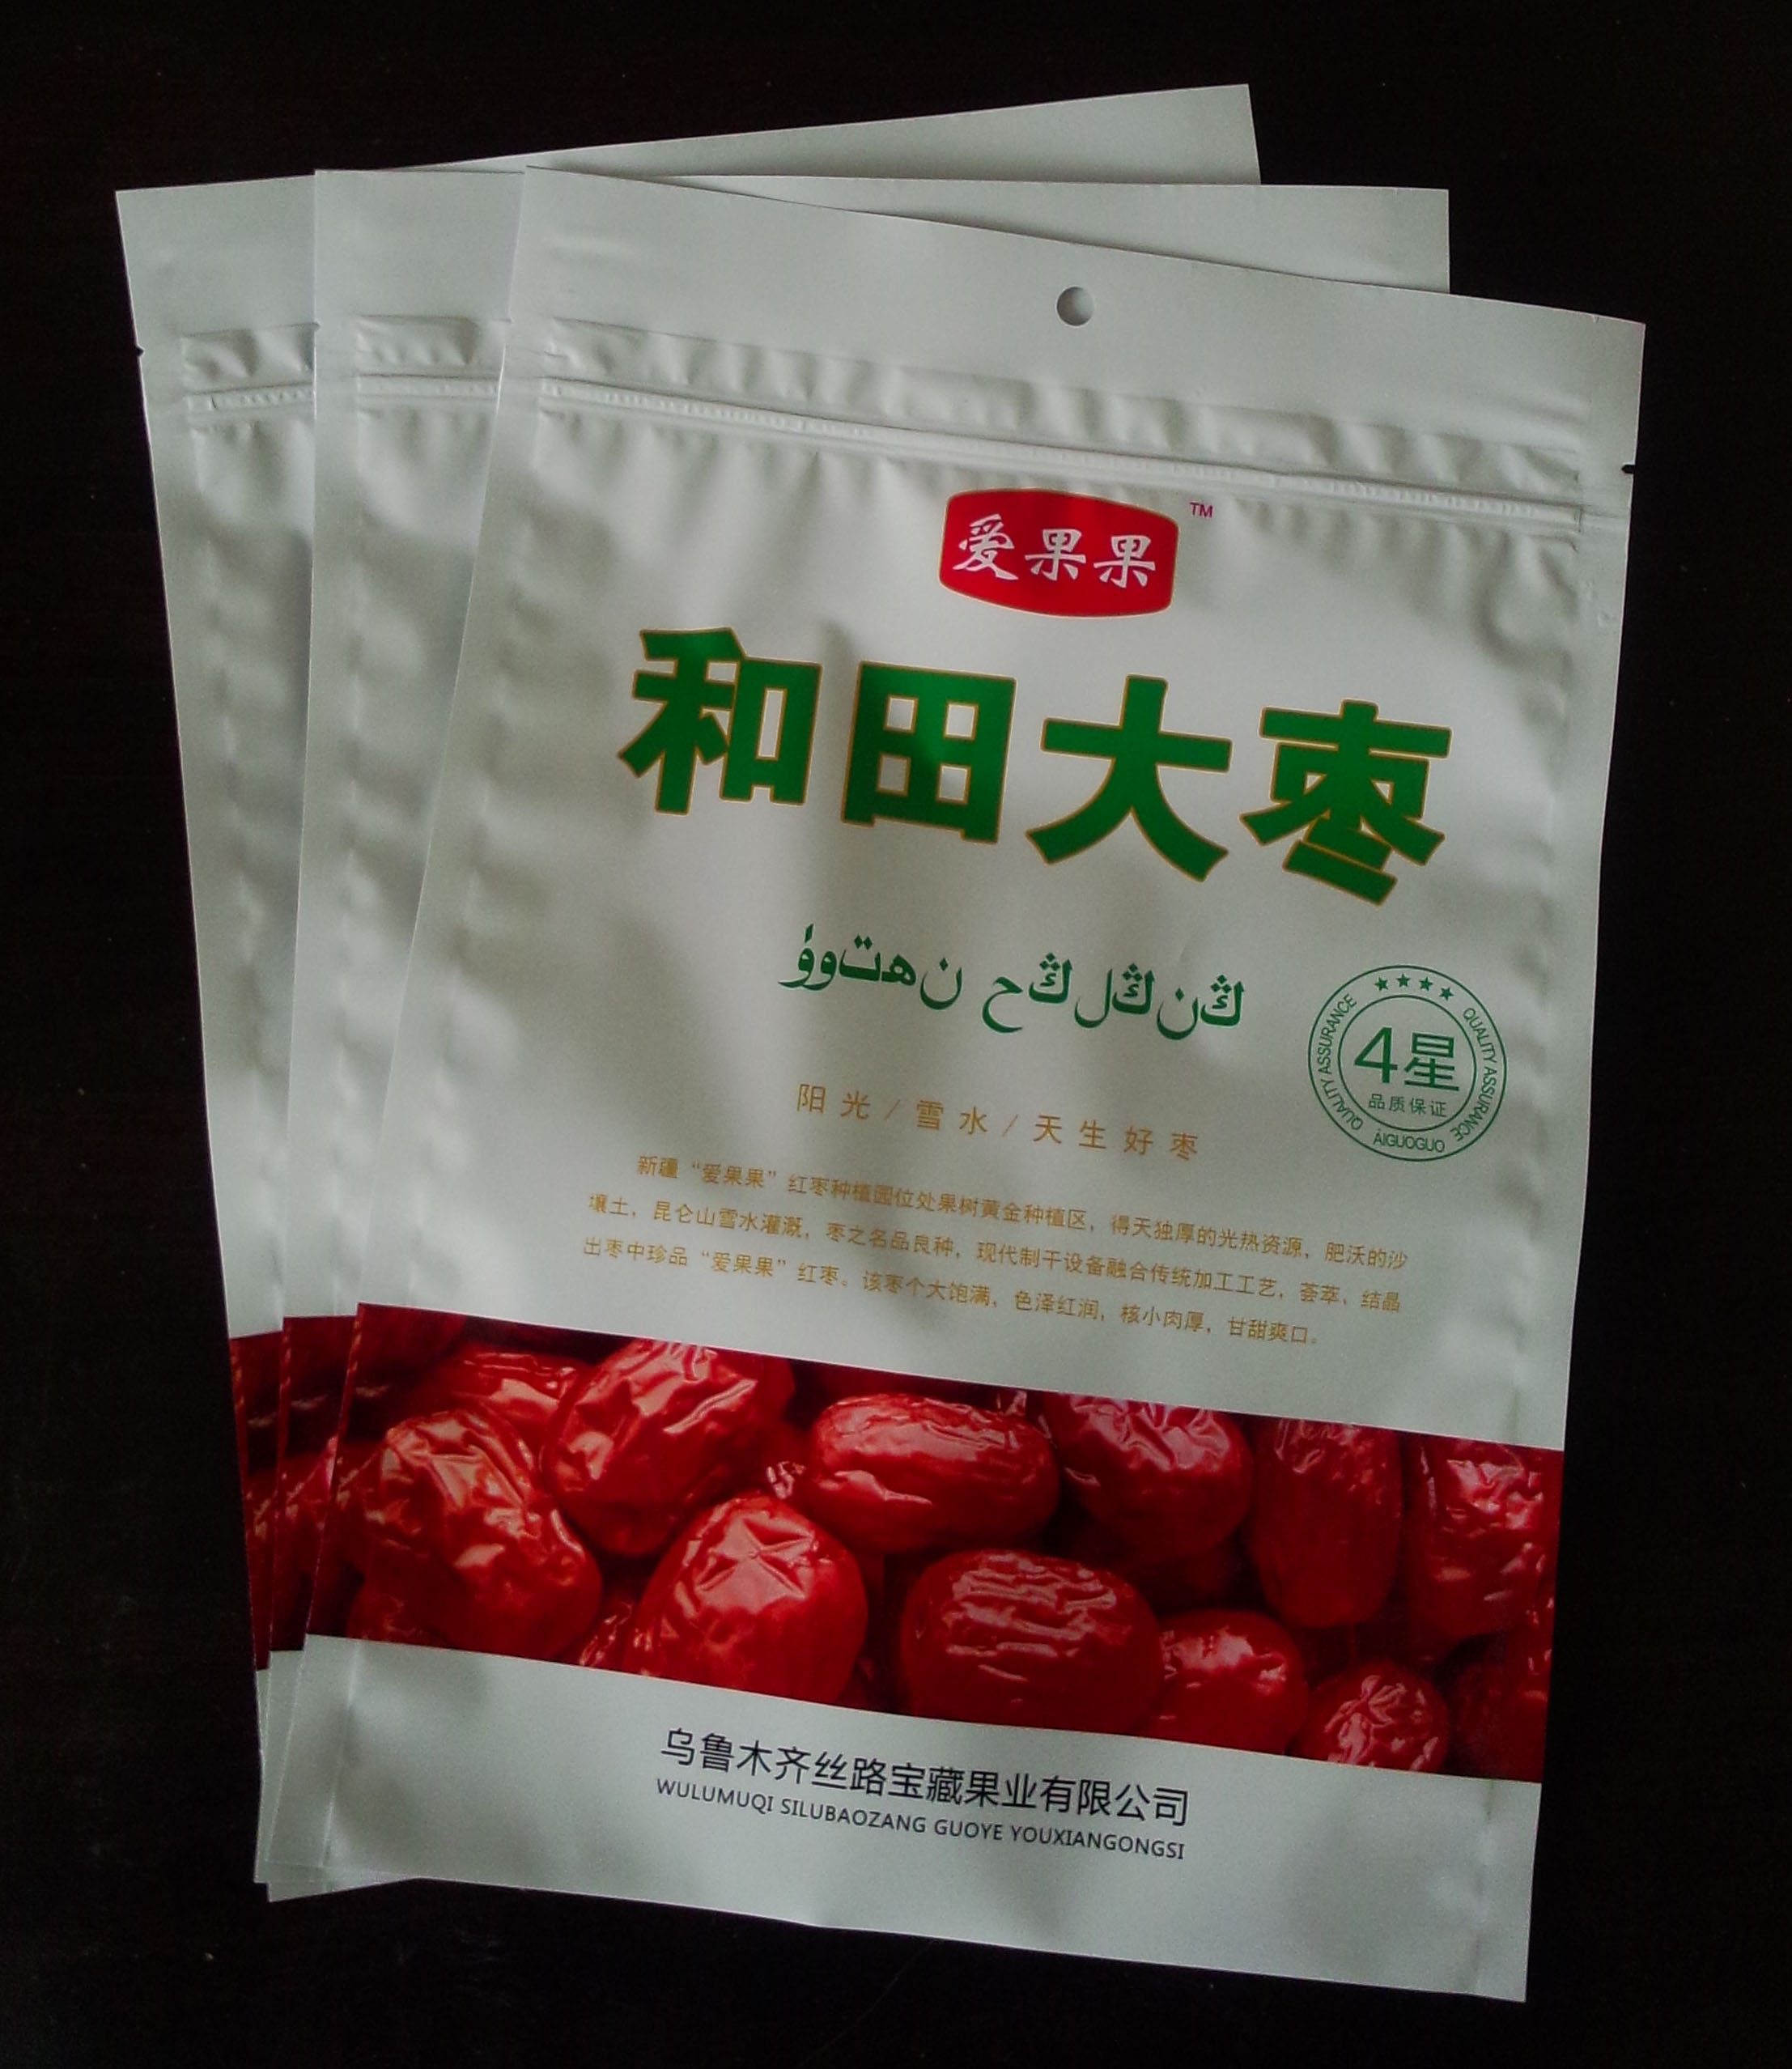 供应红枣包装袋干果包装袋专业的包装印刷厂家图片